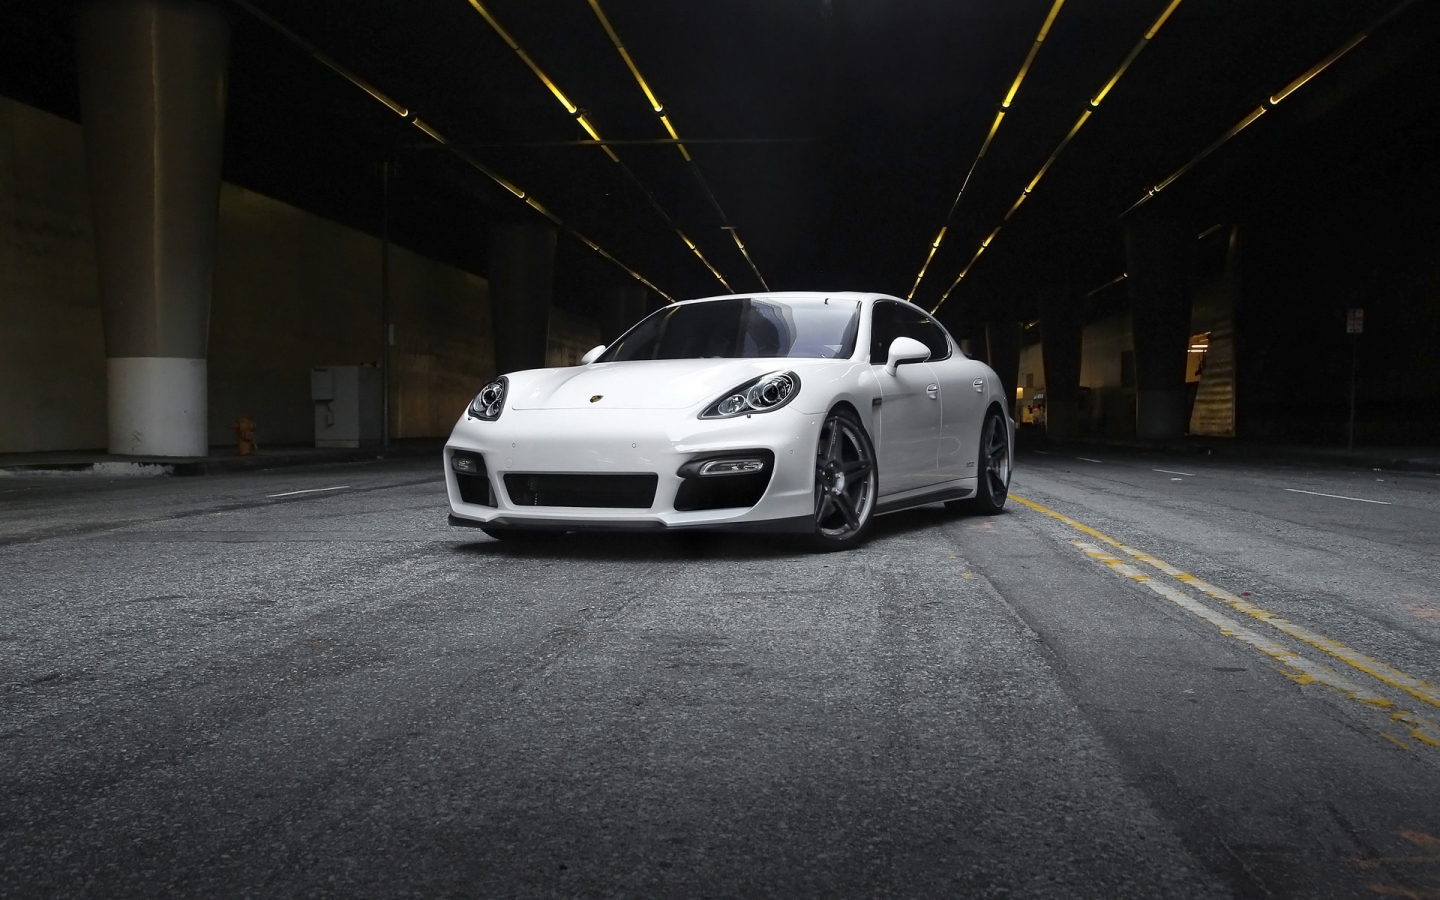 2011 Vorsteiner Porsche V PT Panamera for 1440 x 900 widescreen resolution